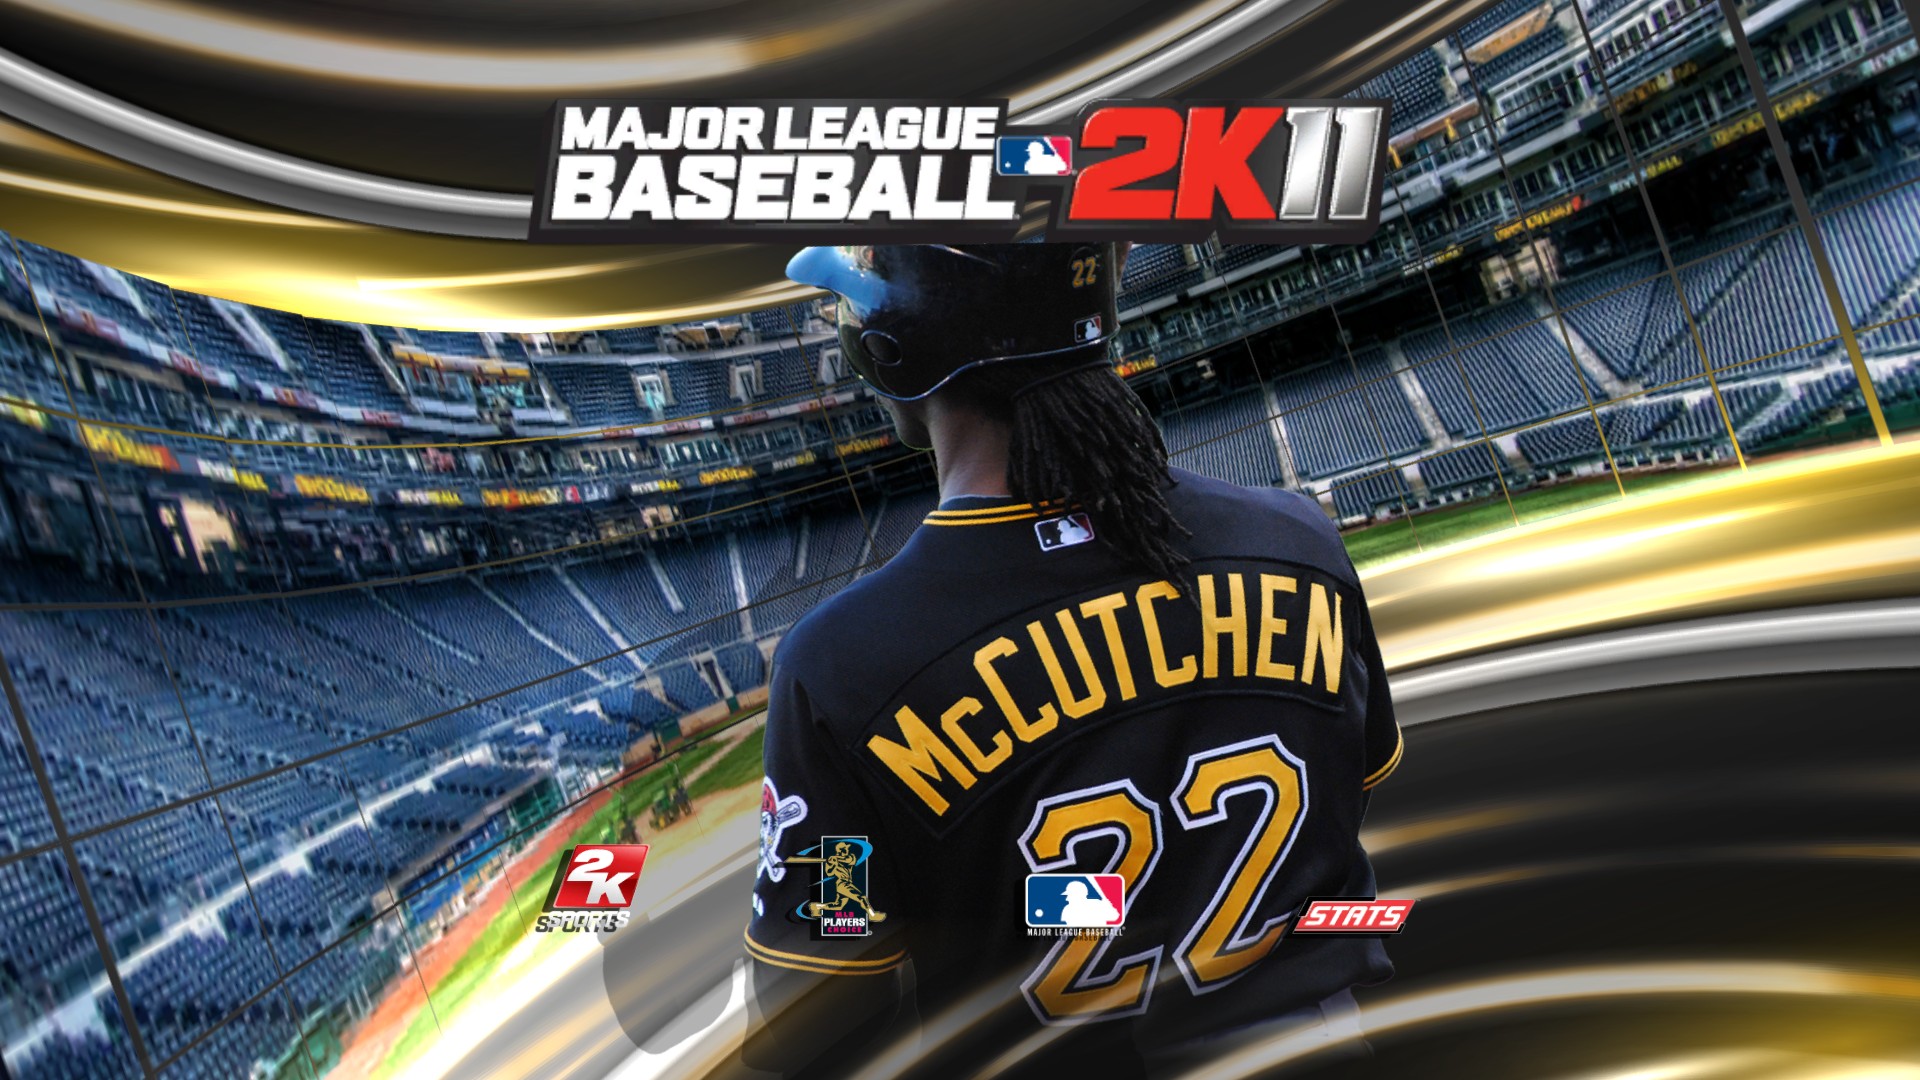 Major League Baseball 2k11 HD Wallpaper Background Image